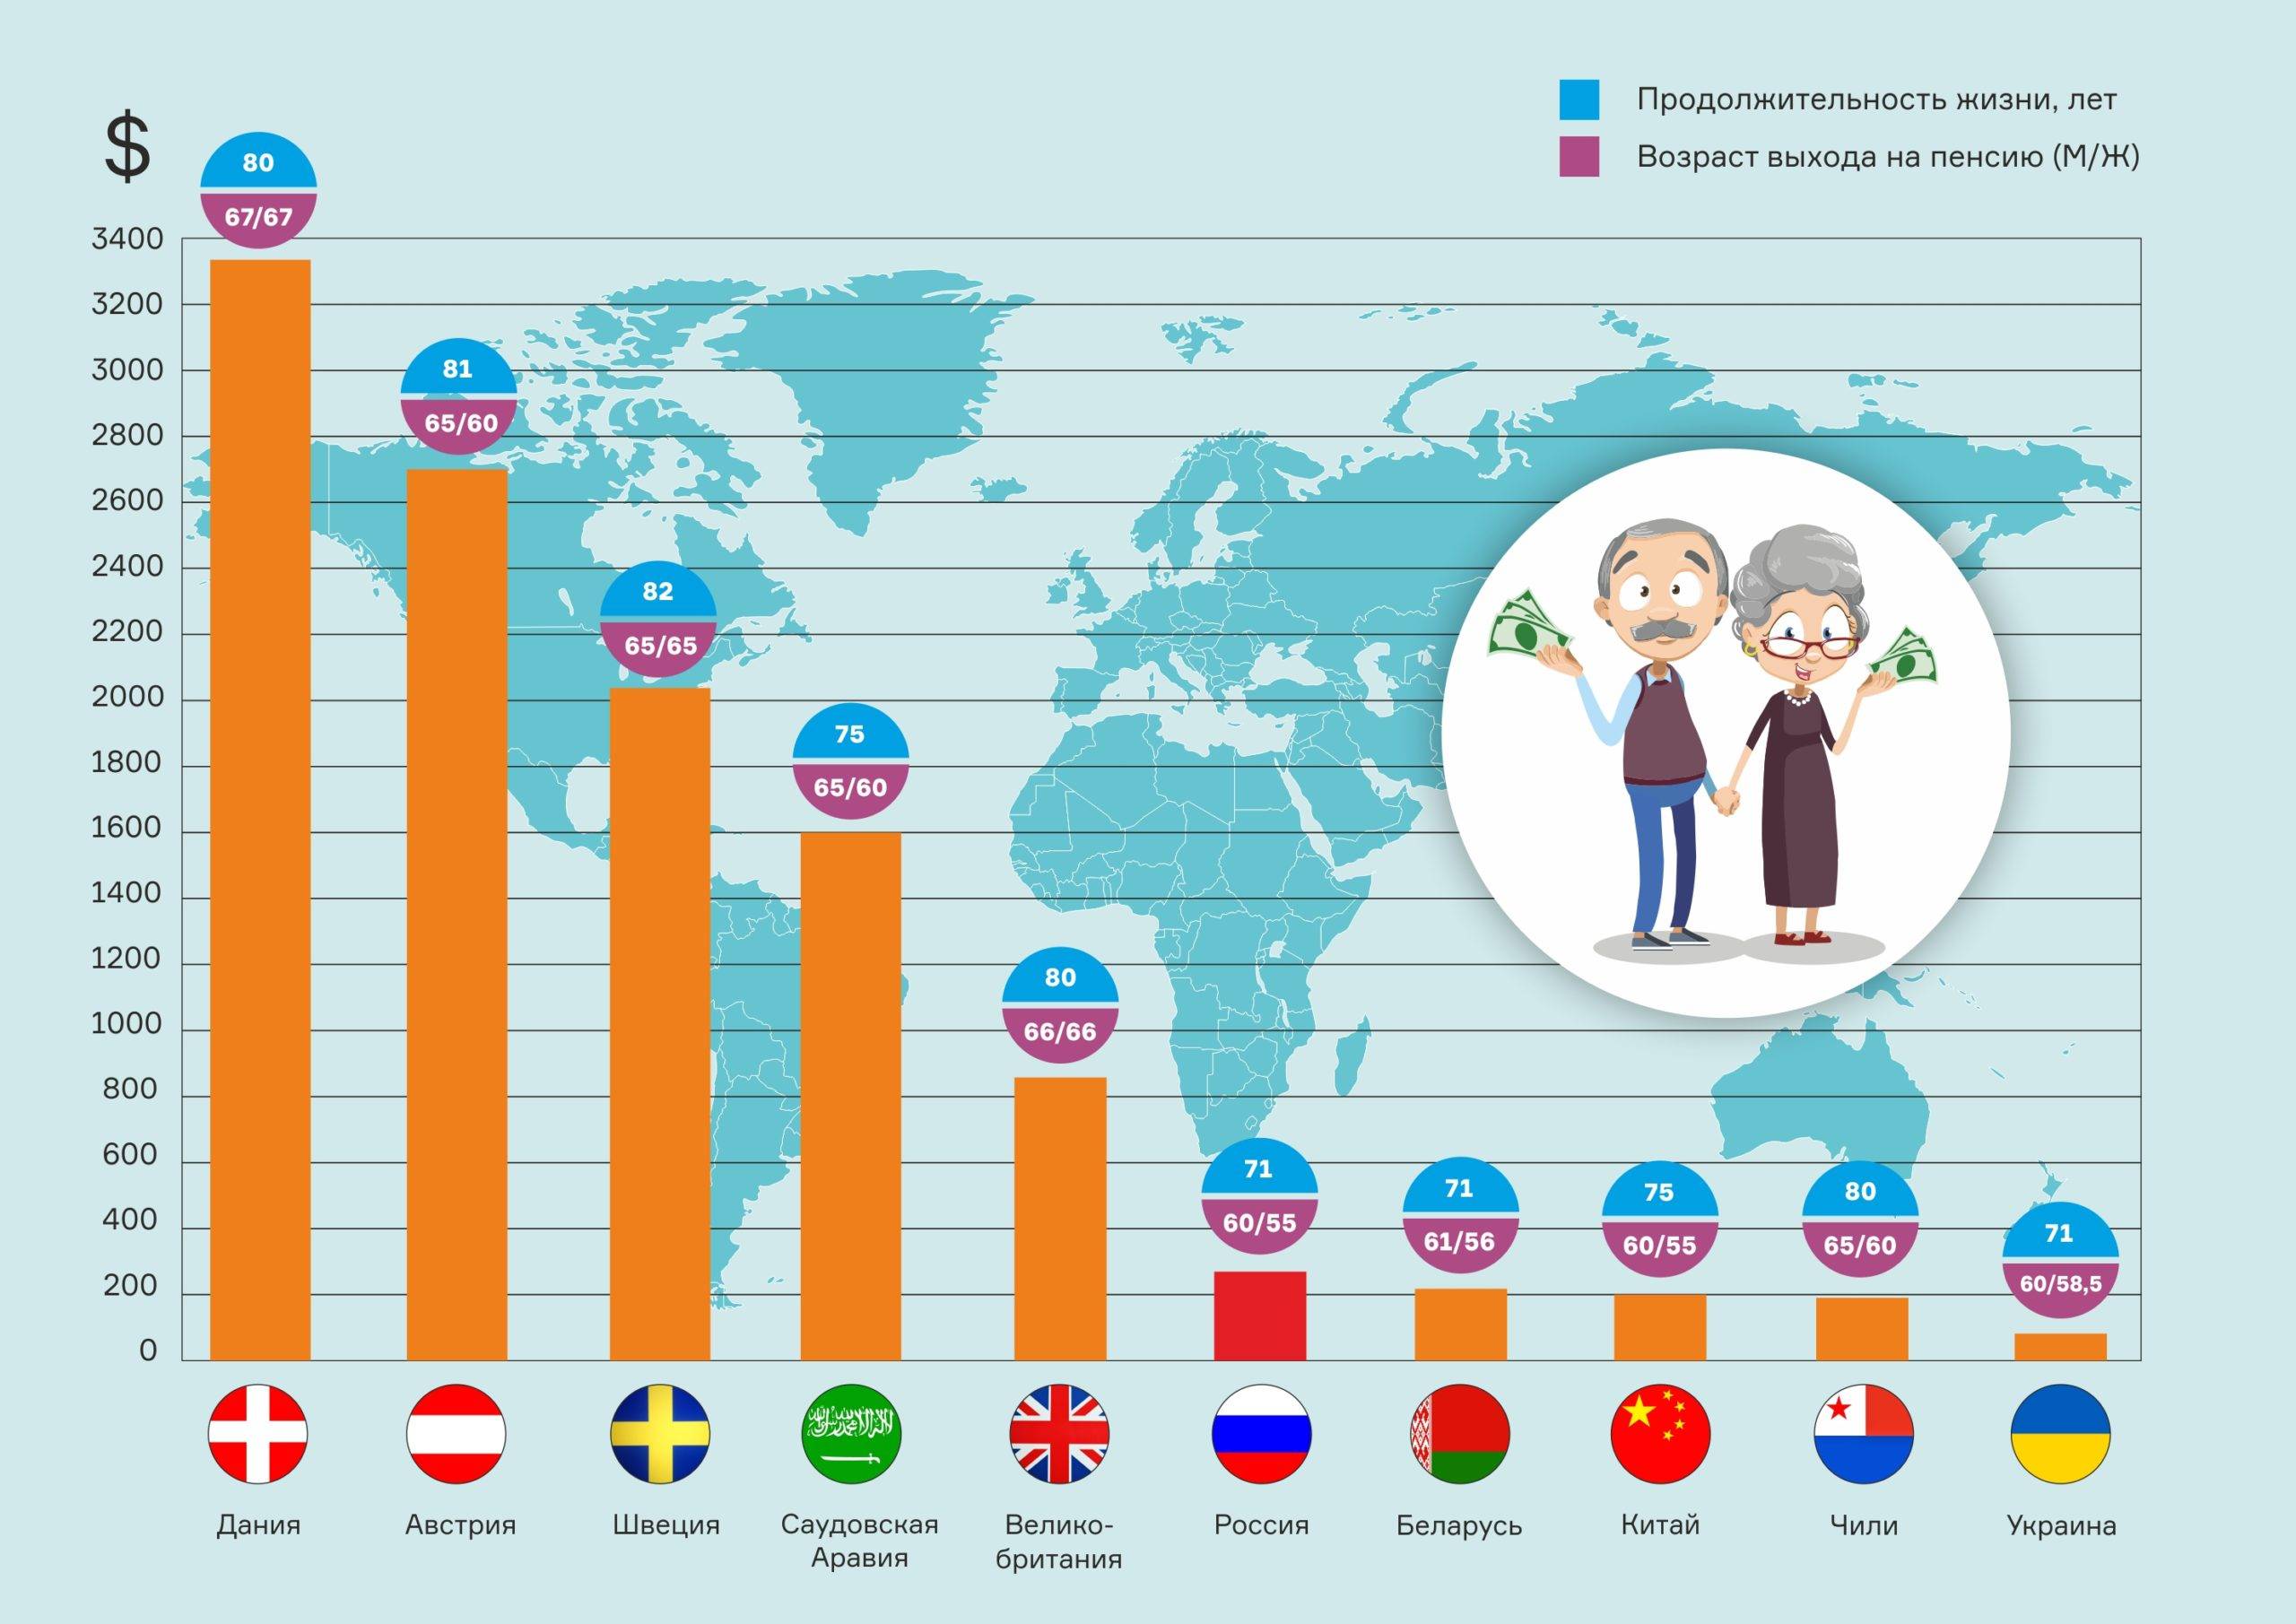 Пенсионный возраст в финляндии. Пенсии в мире в 2021 году. Пенсионный Возраст в разных странах. Пенсионный Возраст по странам.